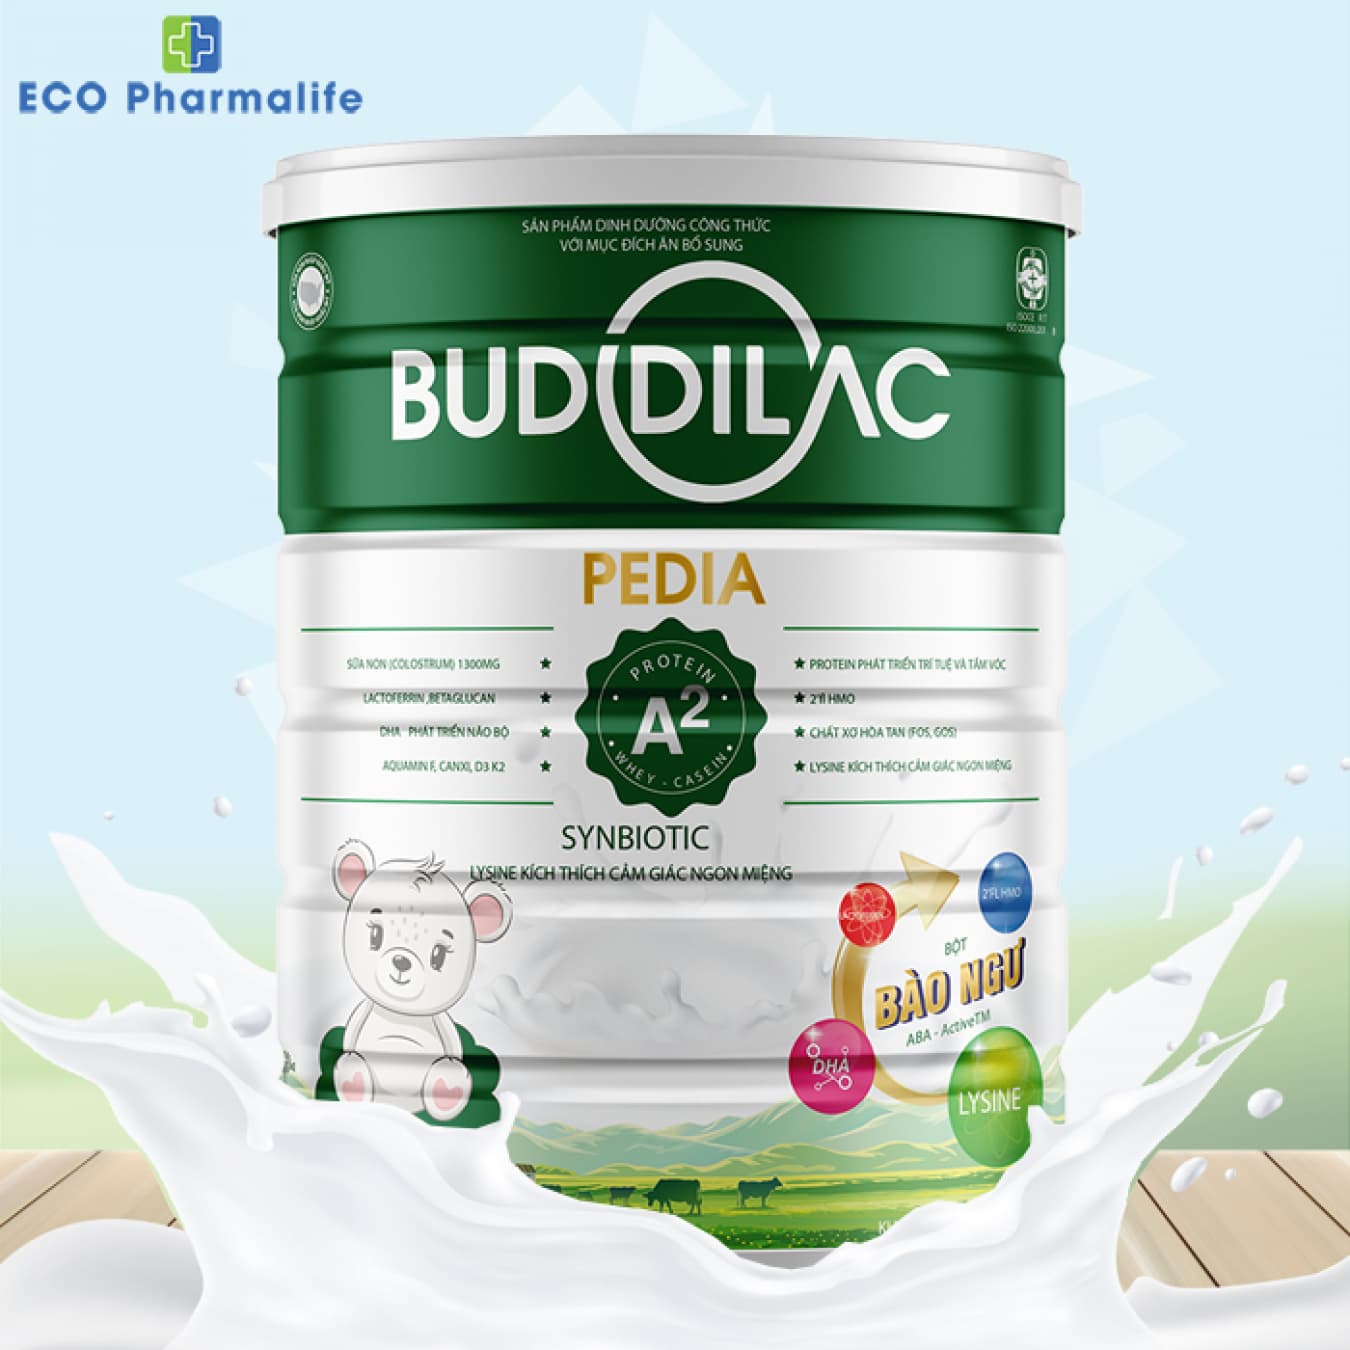 Sữa Buddilac Pedia hộp 900g giúp trẻ trên 1 tuổi phát triển toàn diện